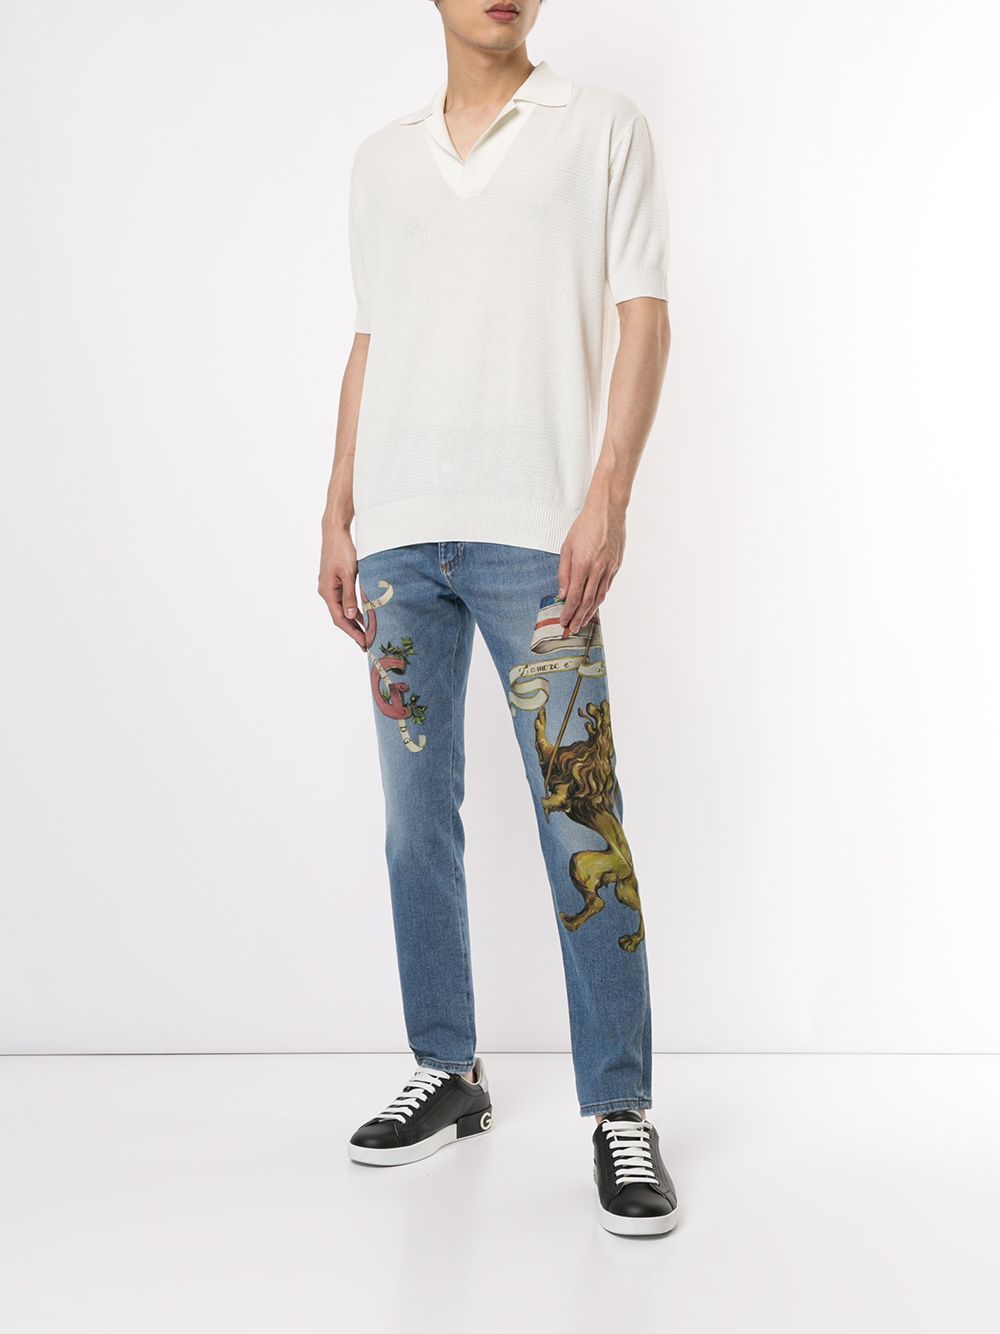 фото Dolce & Gabbana джинсы с принтом